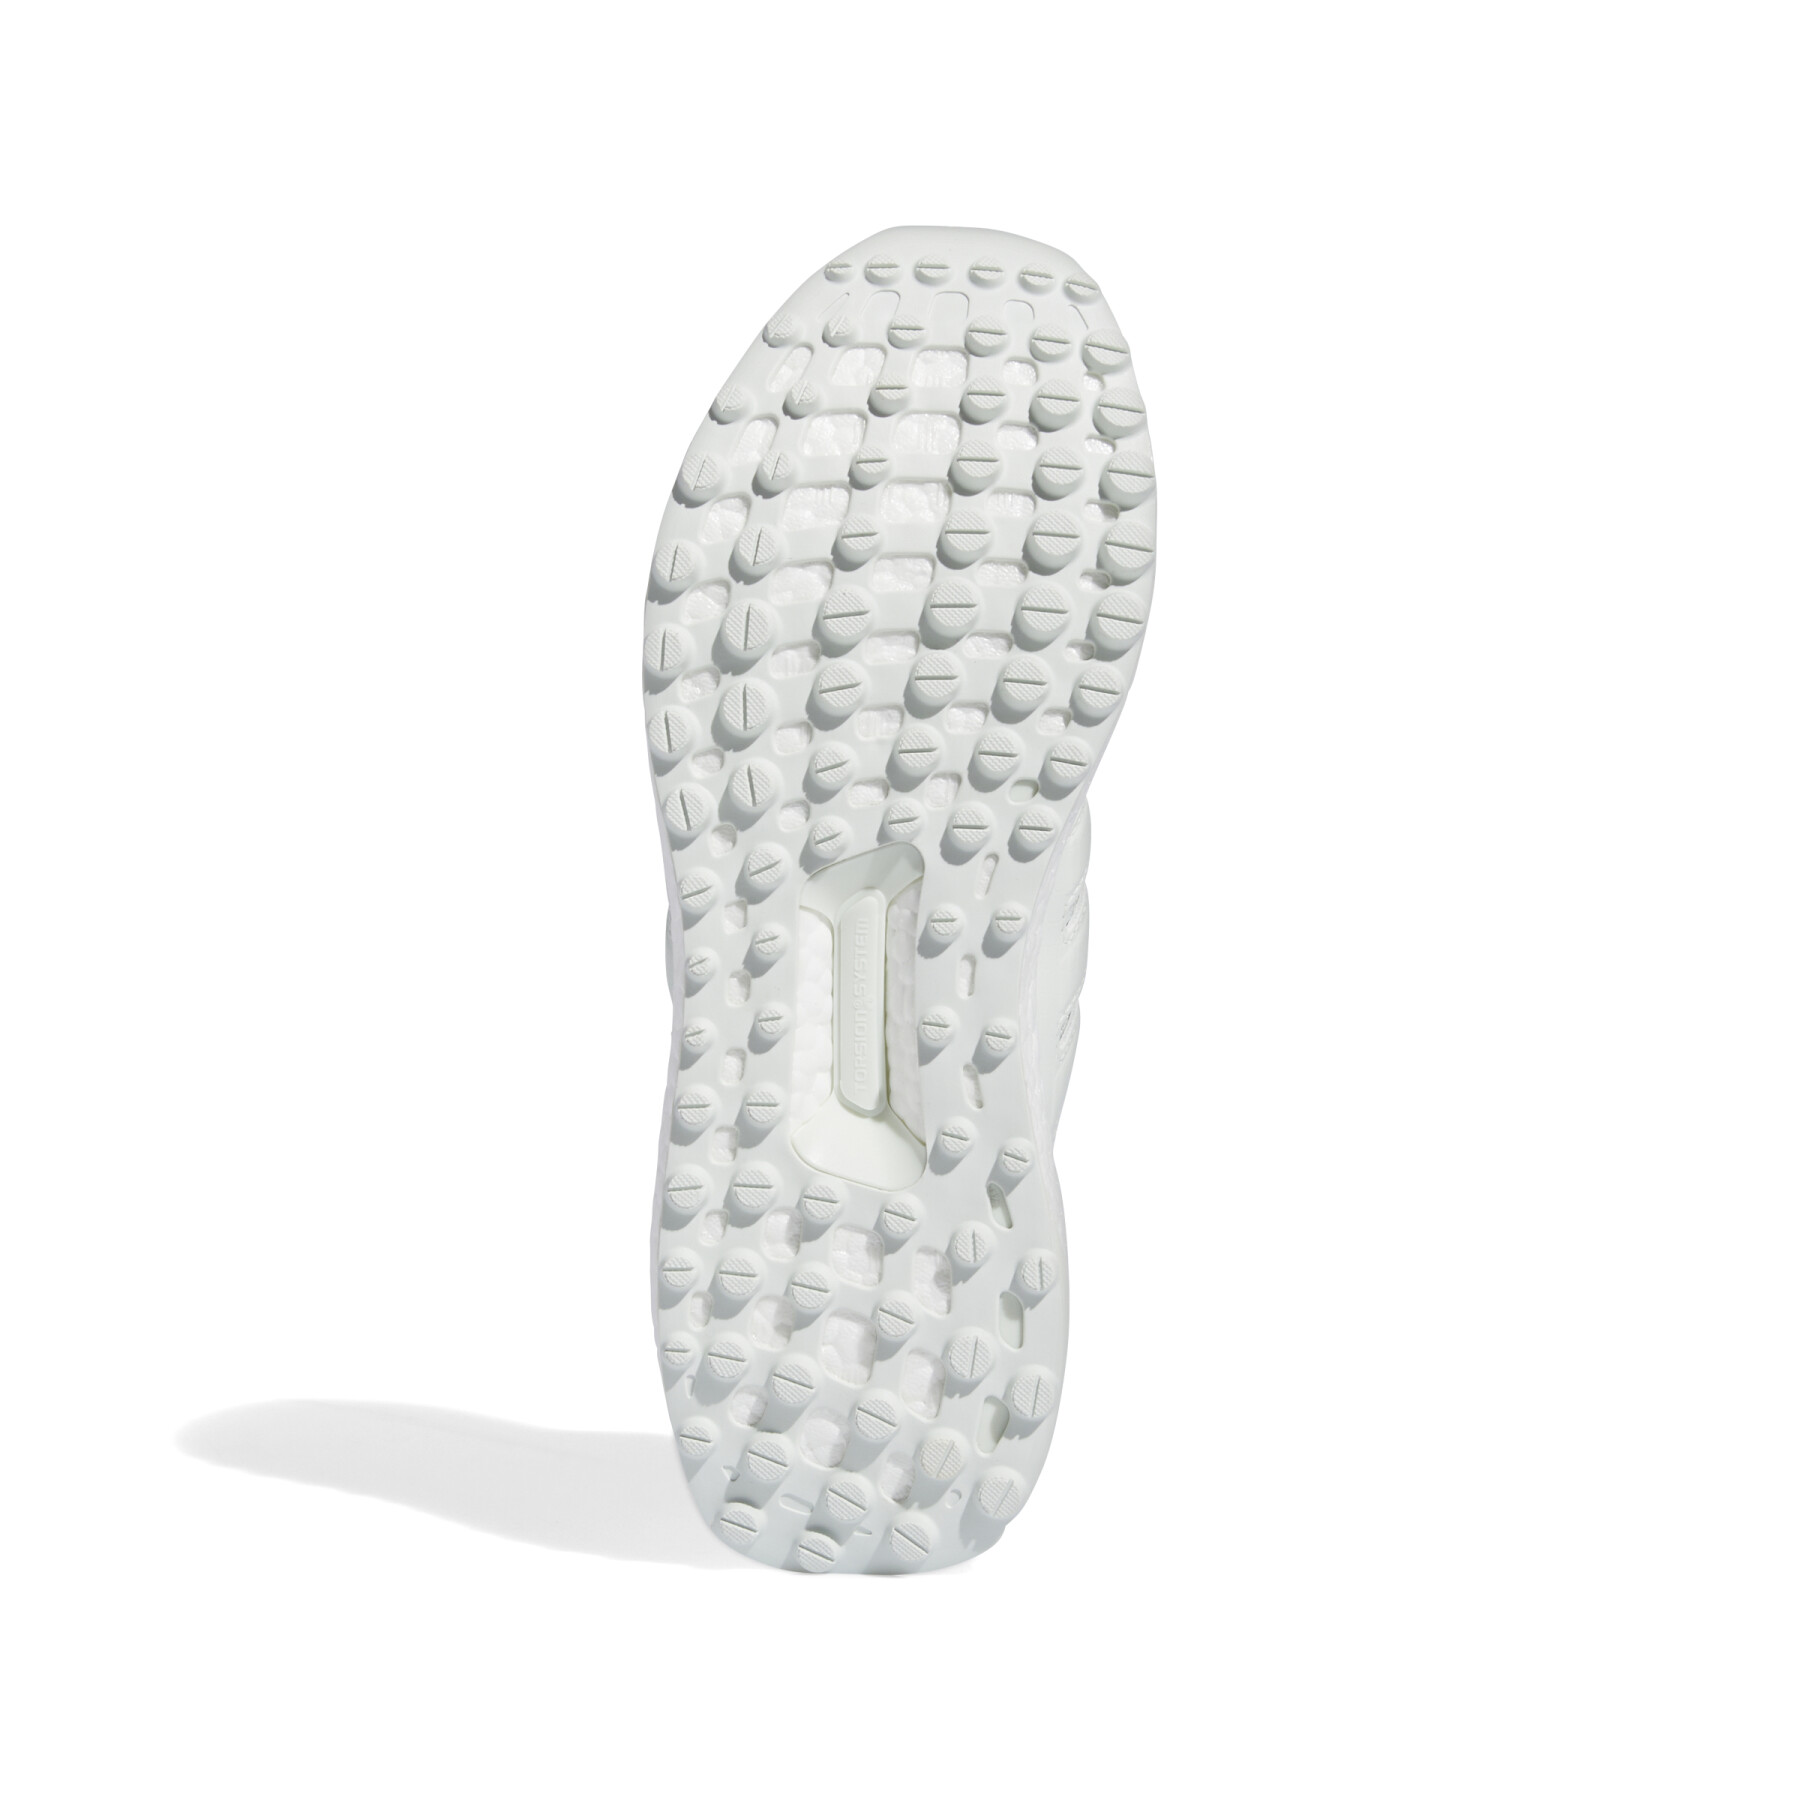 Spikeless golfschoenen adidas Ultraboost